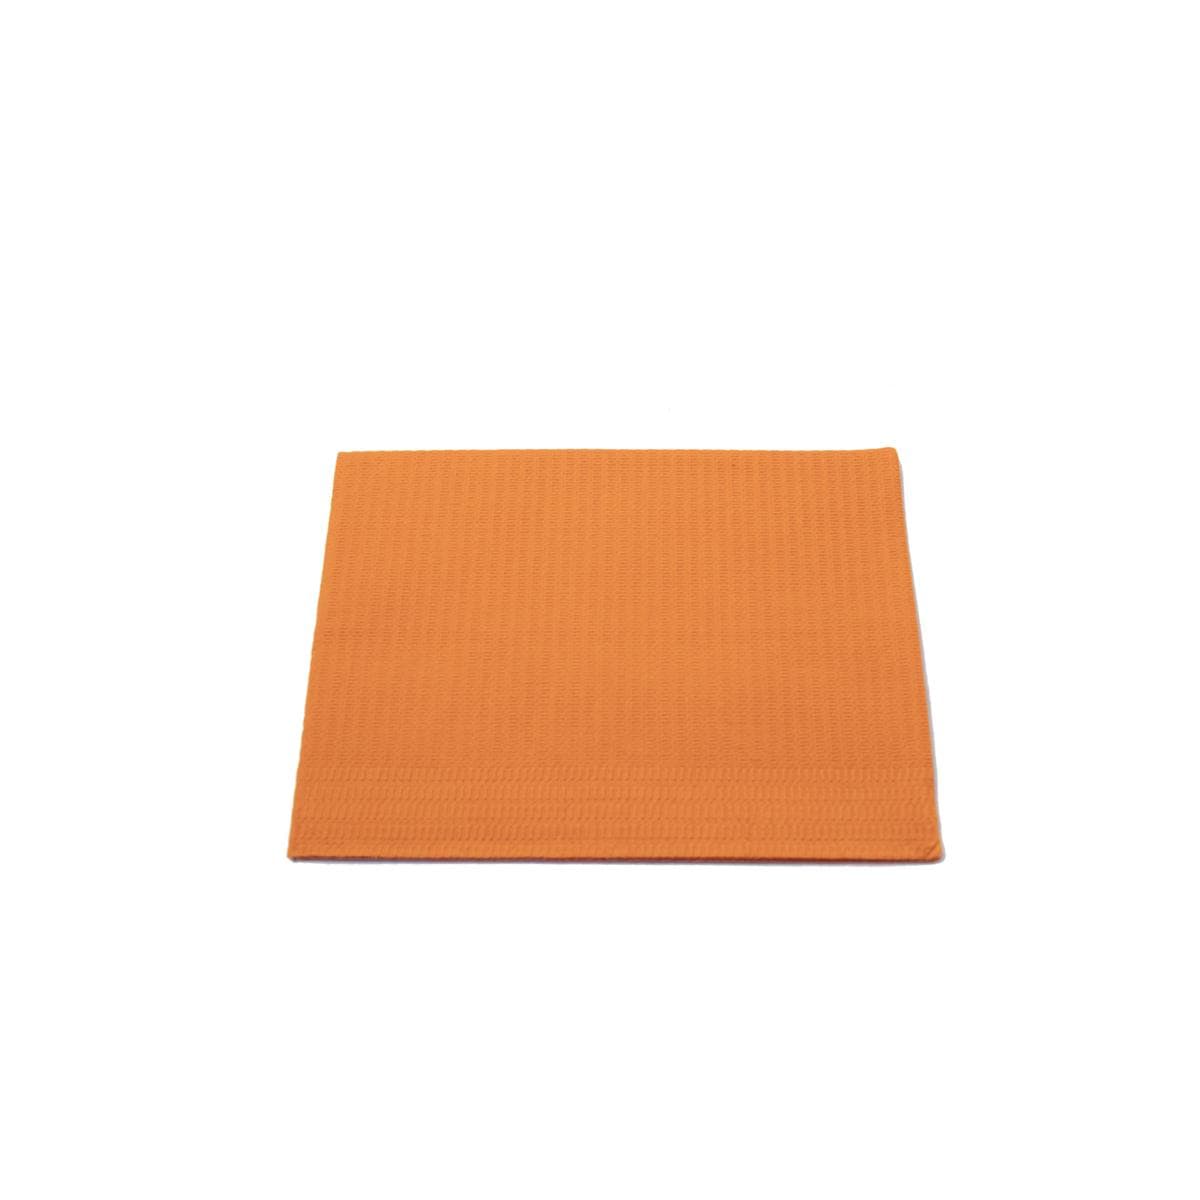 Dri-Gard Flowpack Serviettes patient - Orange, 500 pcs